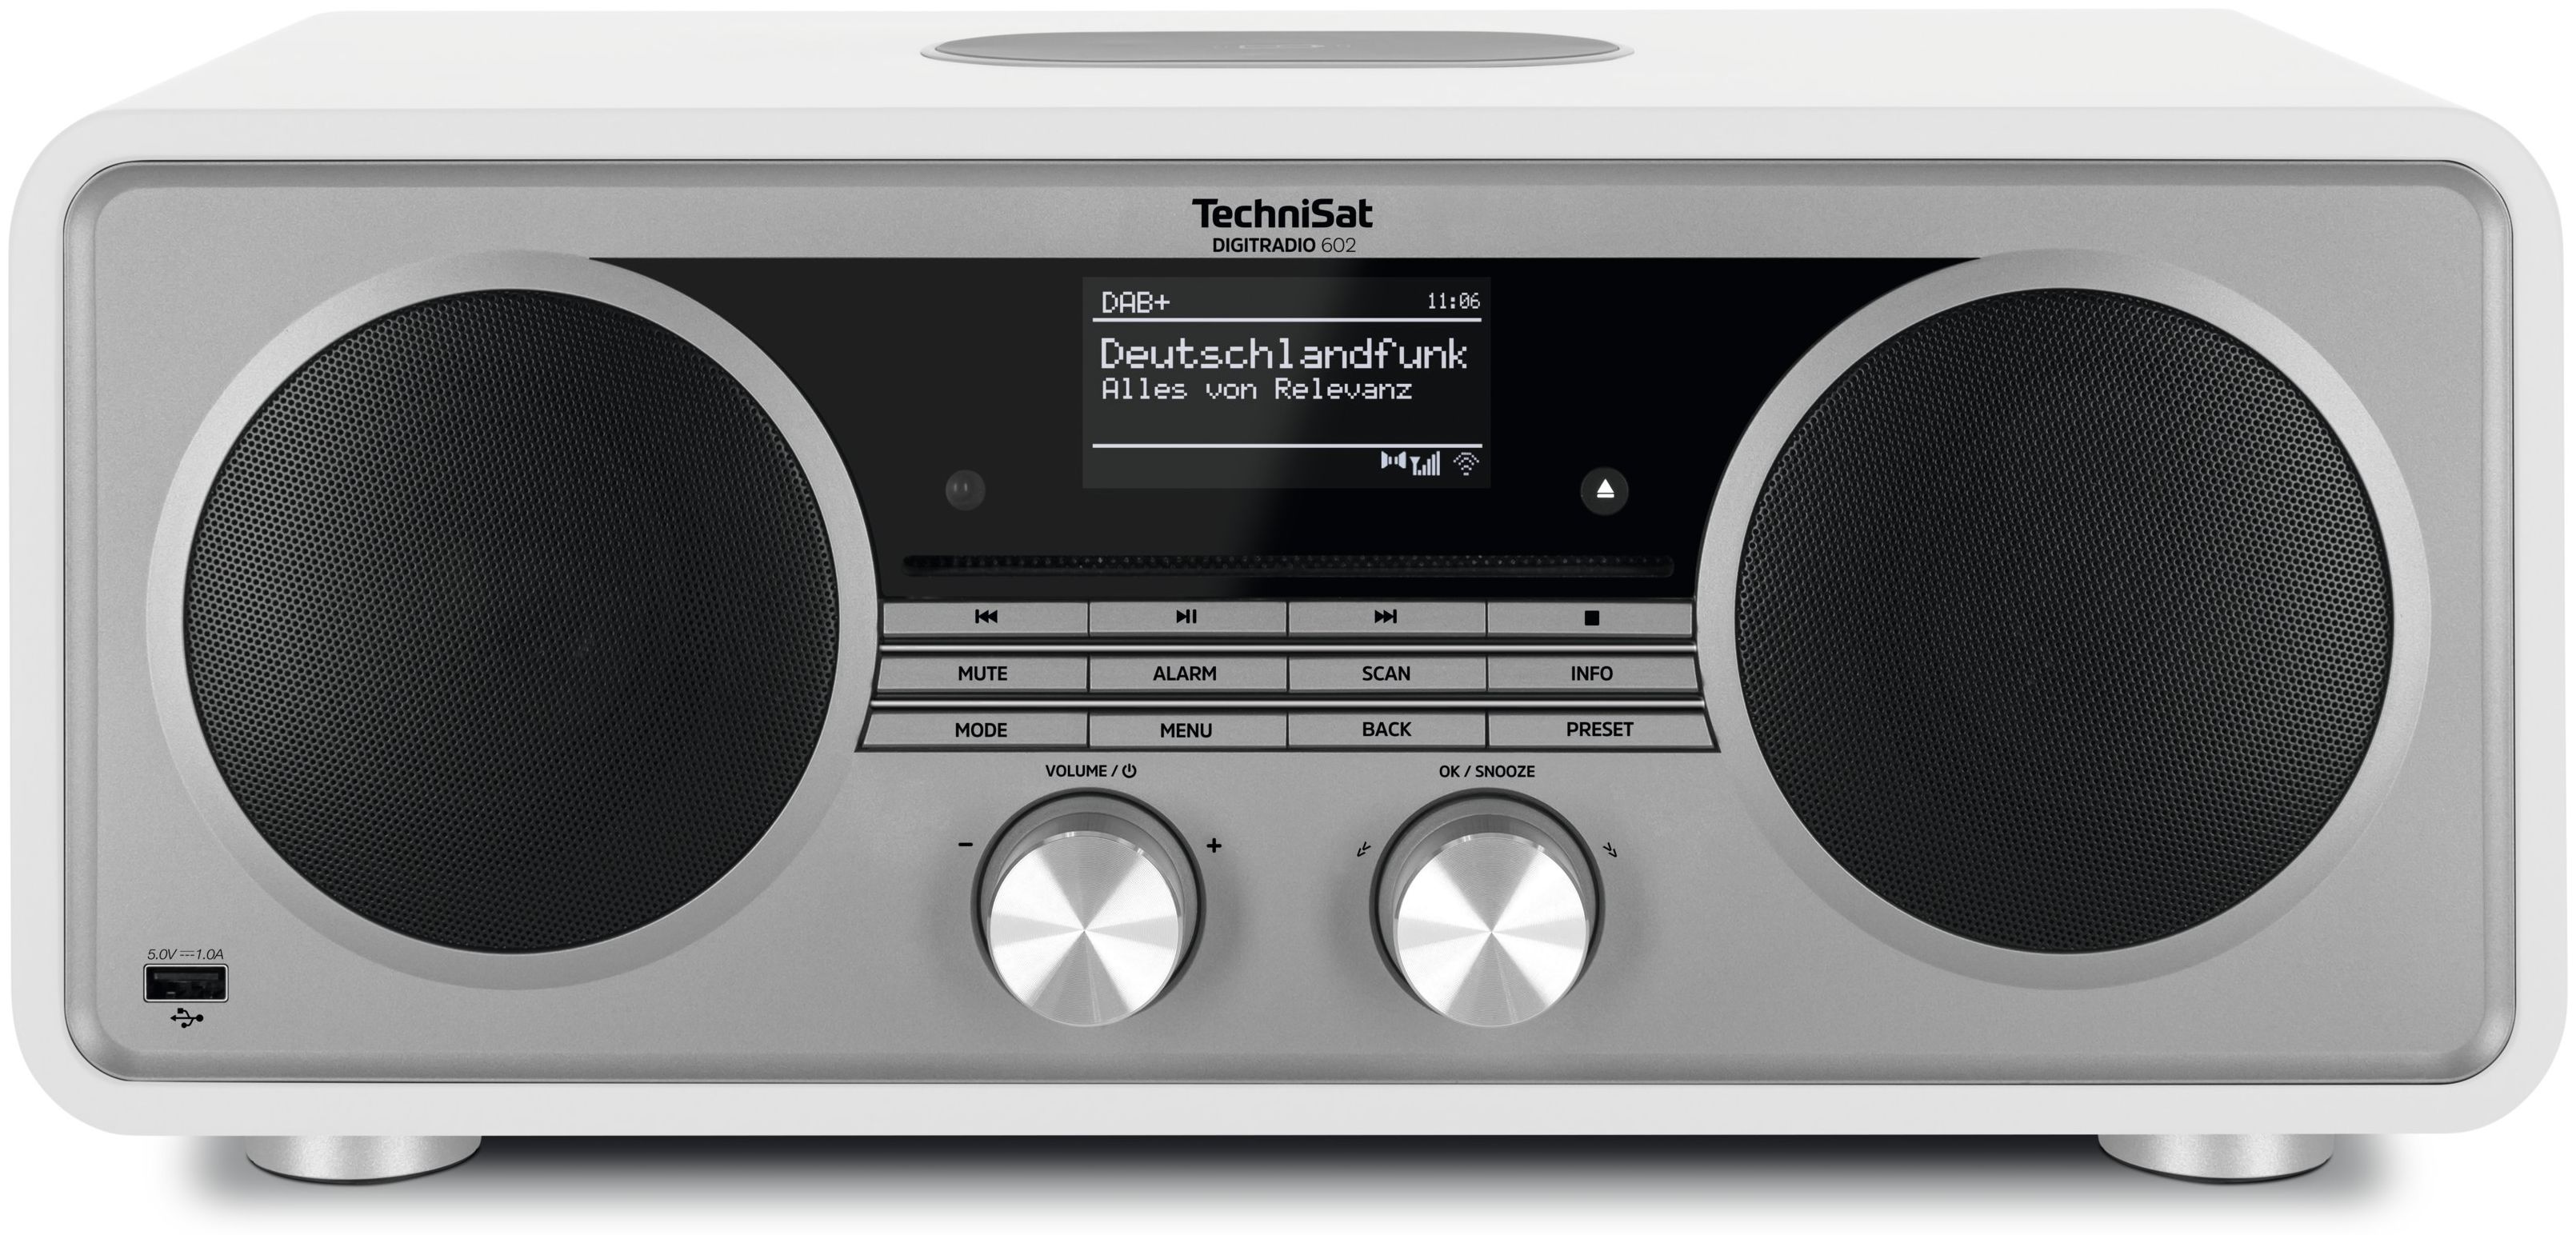 Radio Weiß) (Silber, Technomarkt FM Digitradio 602 expert von Internet DAB+, TechniSat Bluetooth